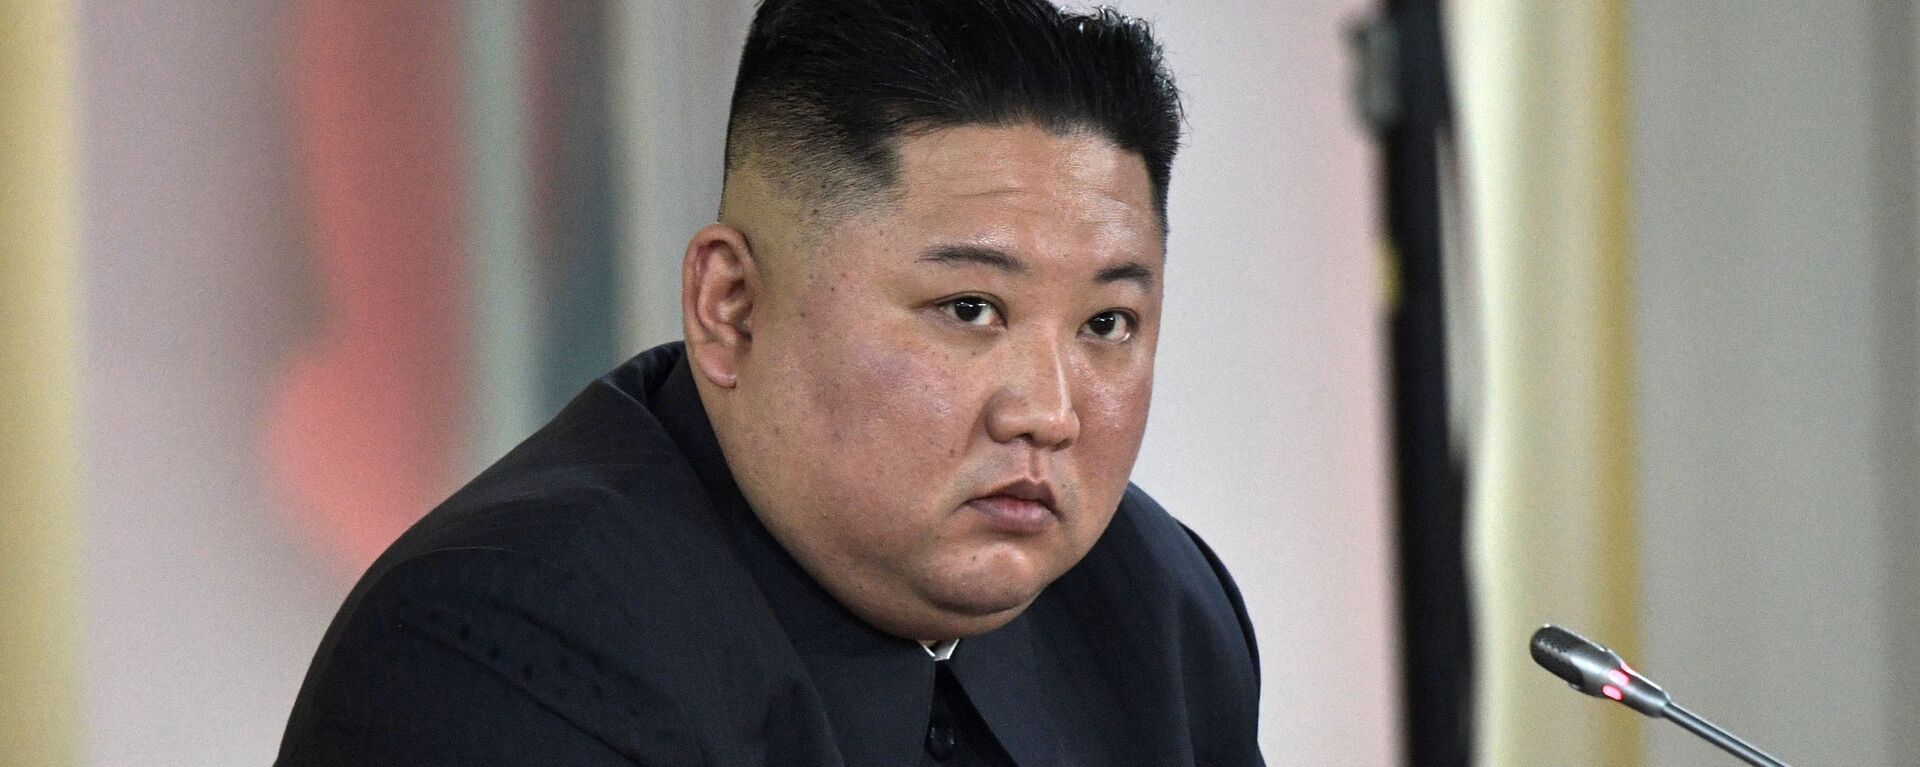 Nhà lãnh đạo Triều Tiên Kim Jong-un. - Sputnik Việt Nam, 1920, 09.04.2021